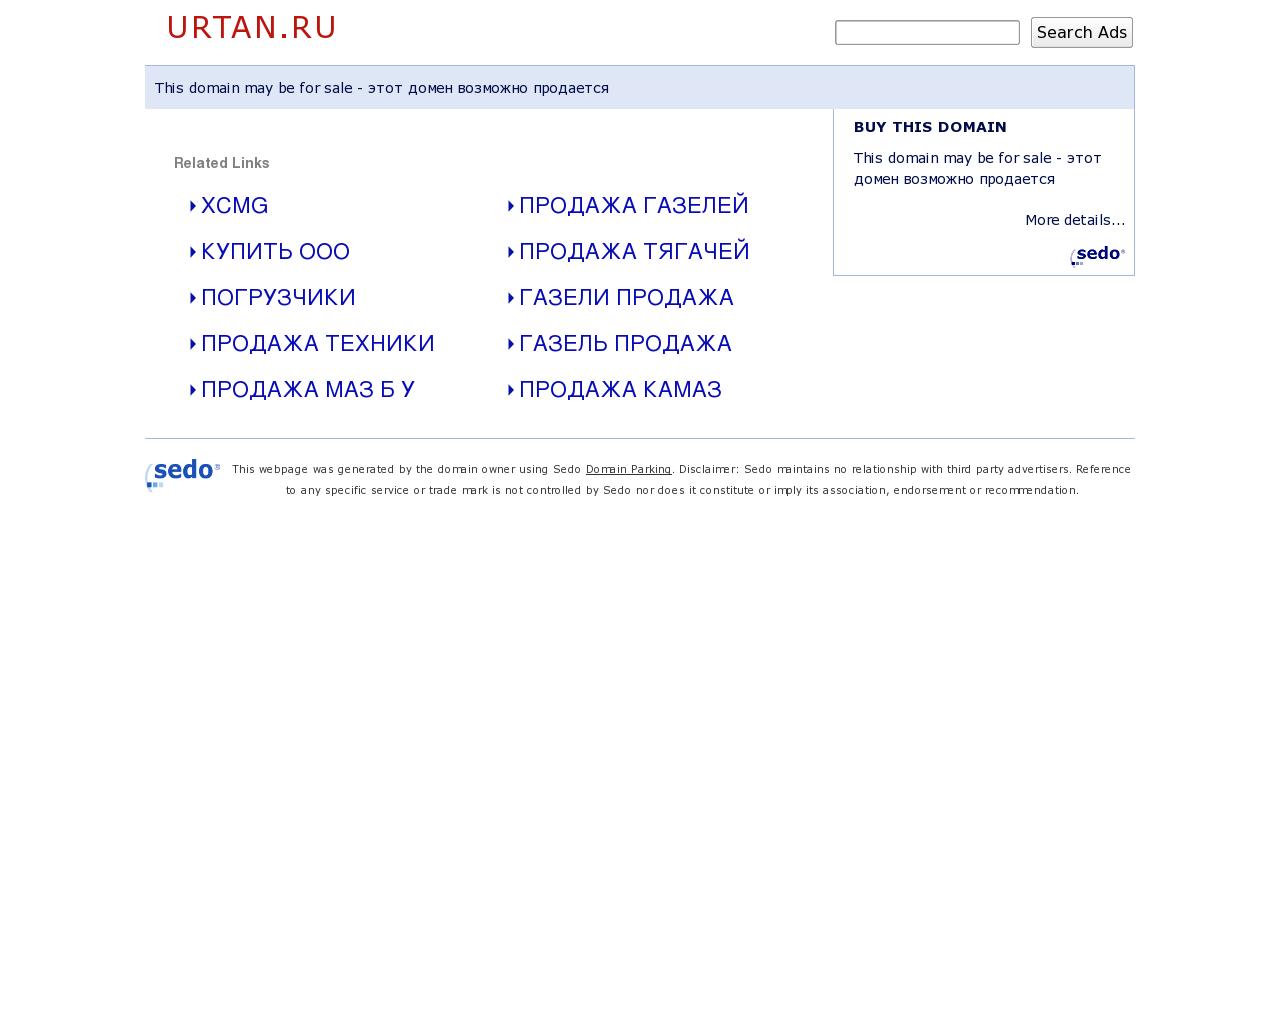 Изображение сайта urtan.ru в разрешении 1280x1024